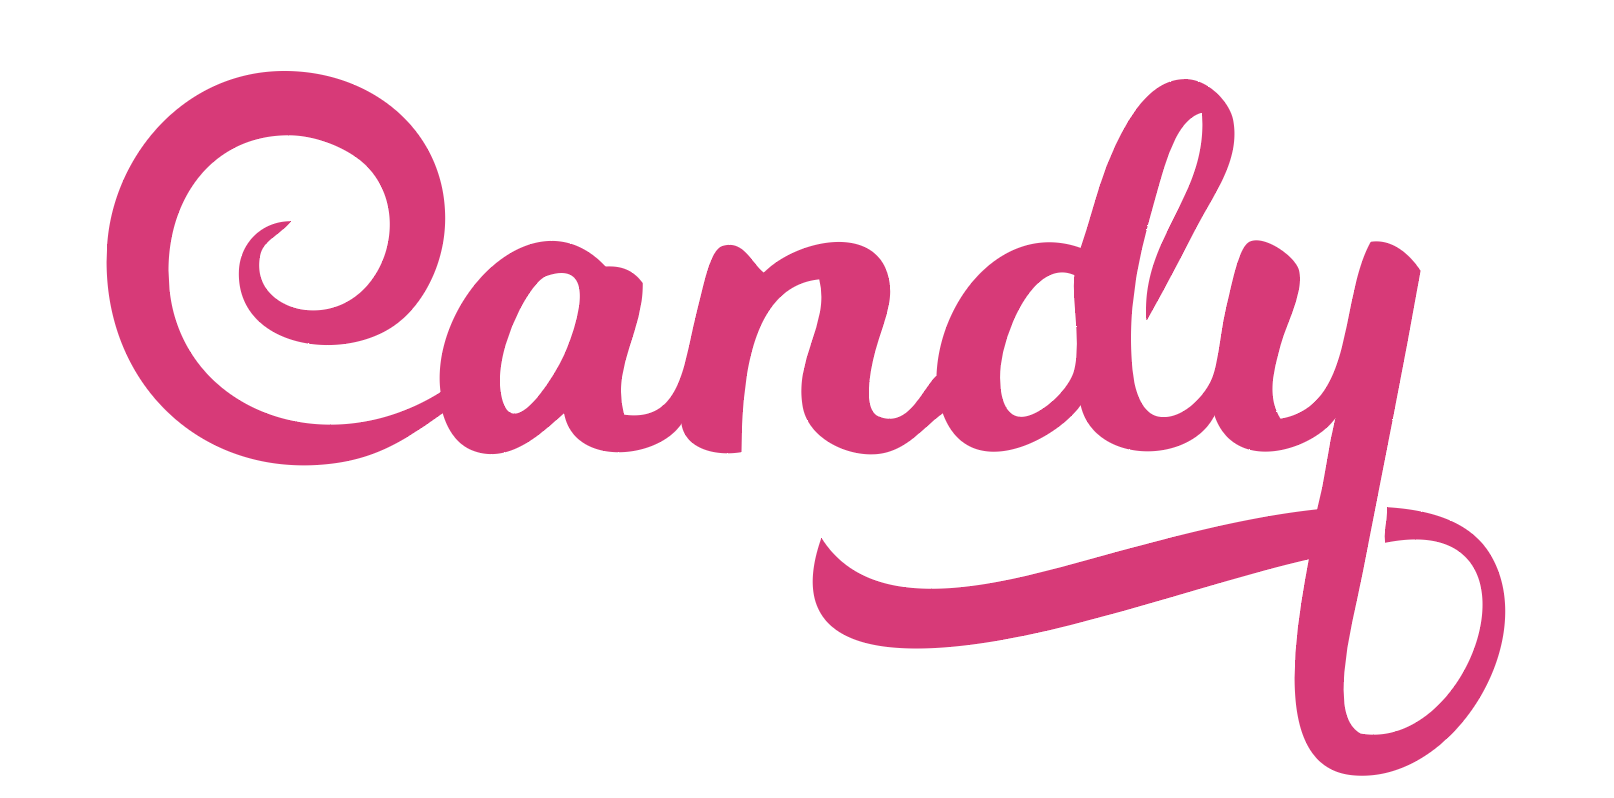 Candy логотип. Candy бытовая техника логотип. Канди логотип стиральной. Без фона логотип Candy.